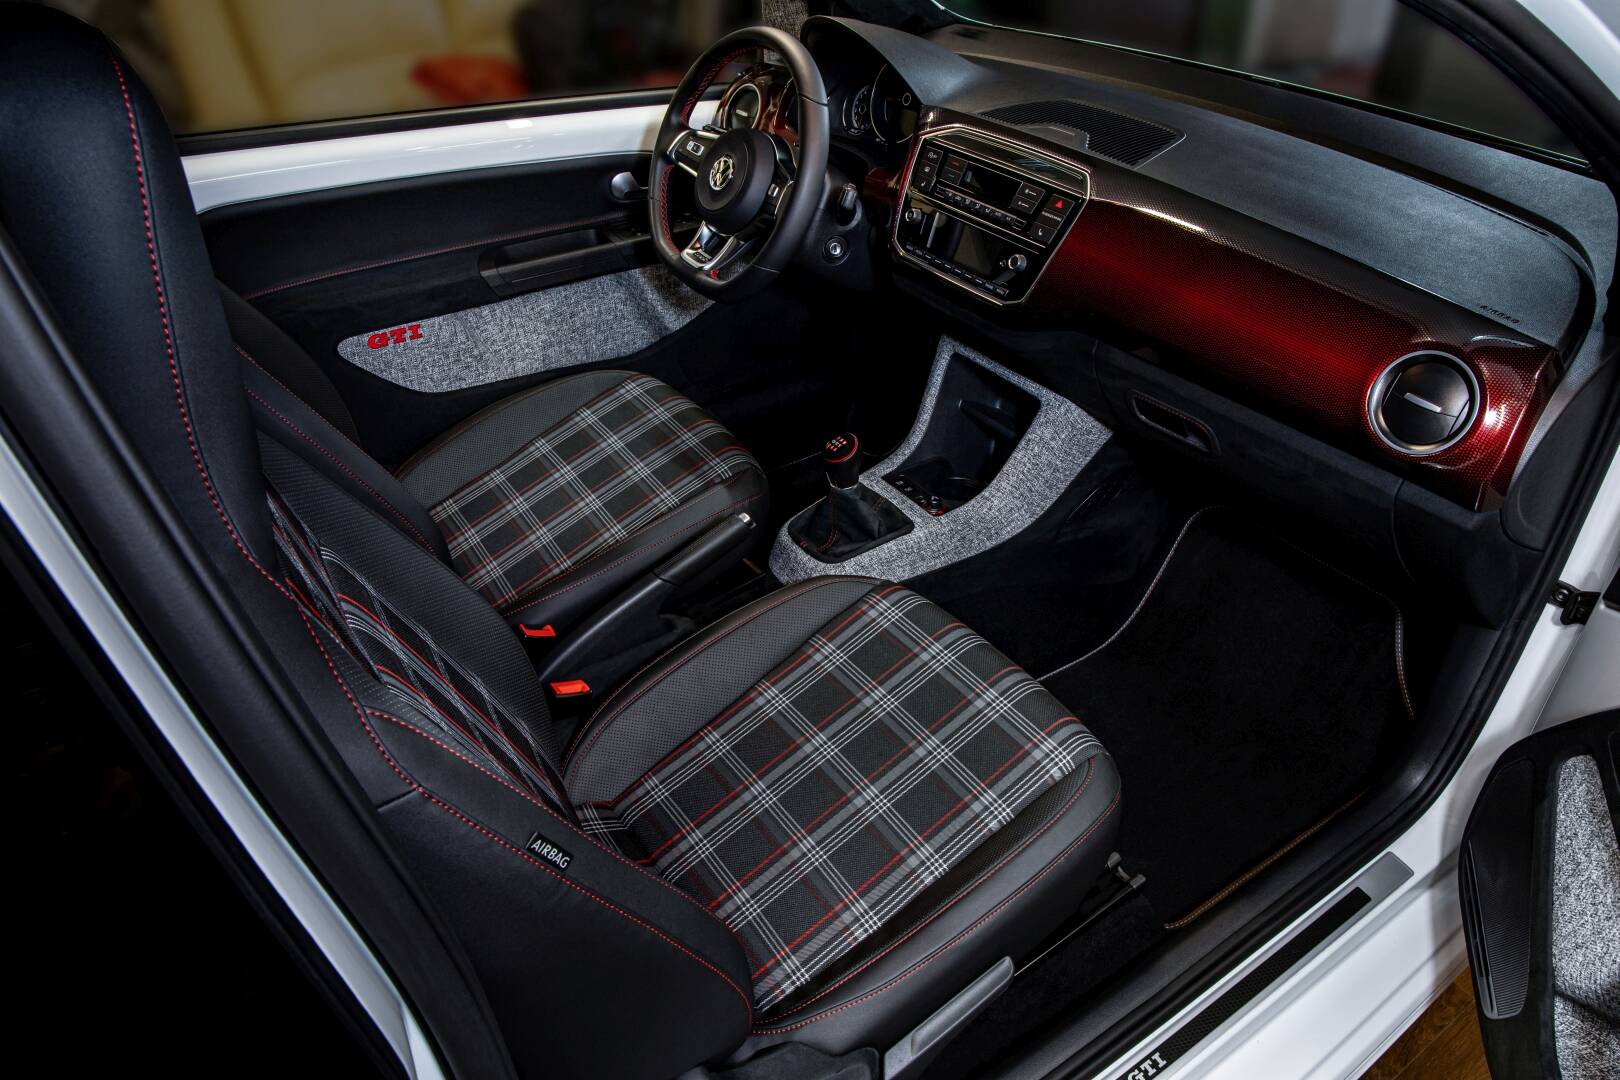 Volkswagen Up! GTI da Vilner traz o interior customizado com materiais de vindos de modelos esportivos de marcas premium. Foto: Divulgação